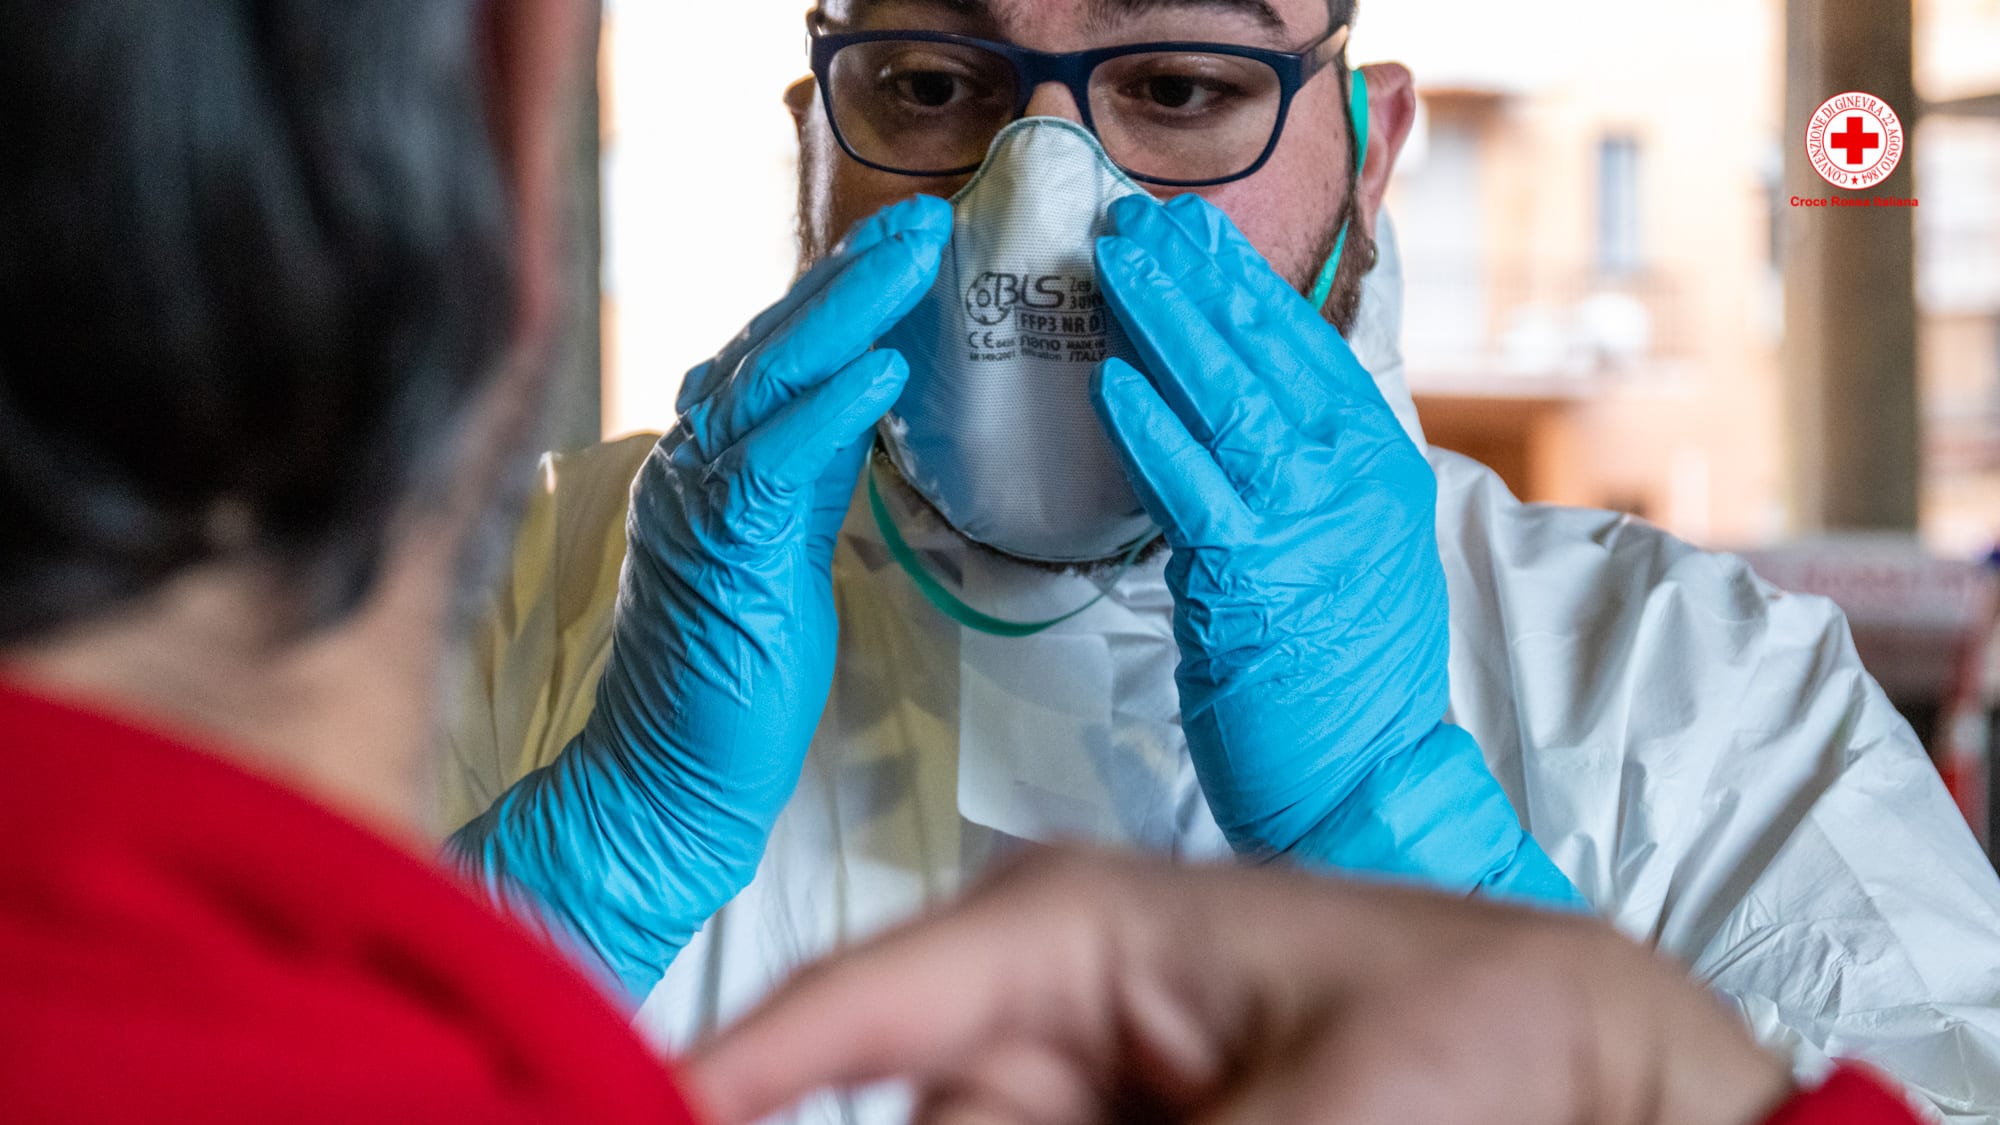 Coronavirus, sulle ambulanze soccorritori con mascherine: conviene abituarsi